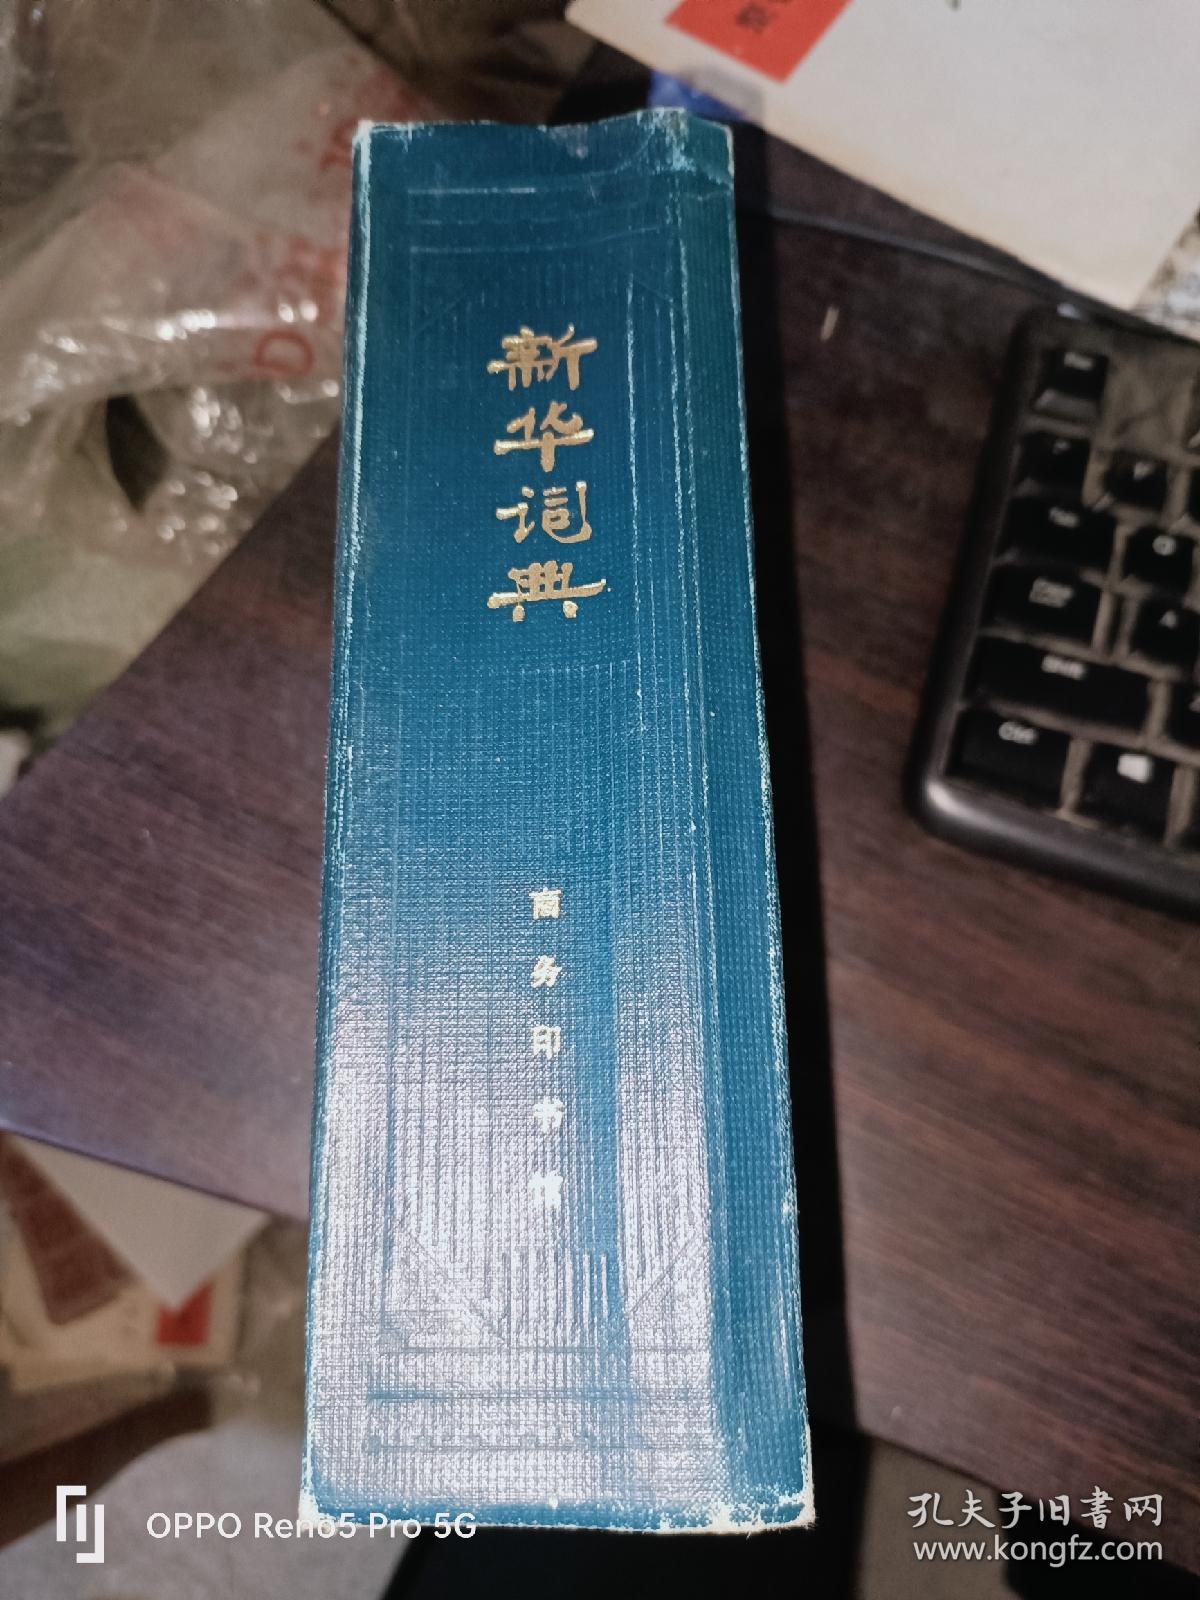 新华词典(32开 精装)